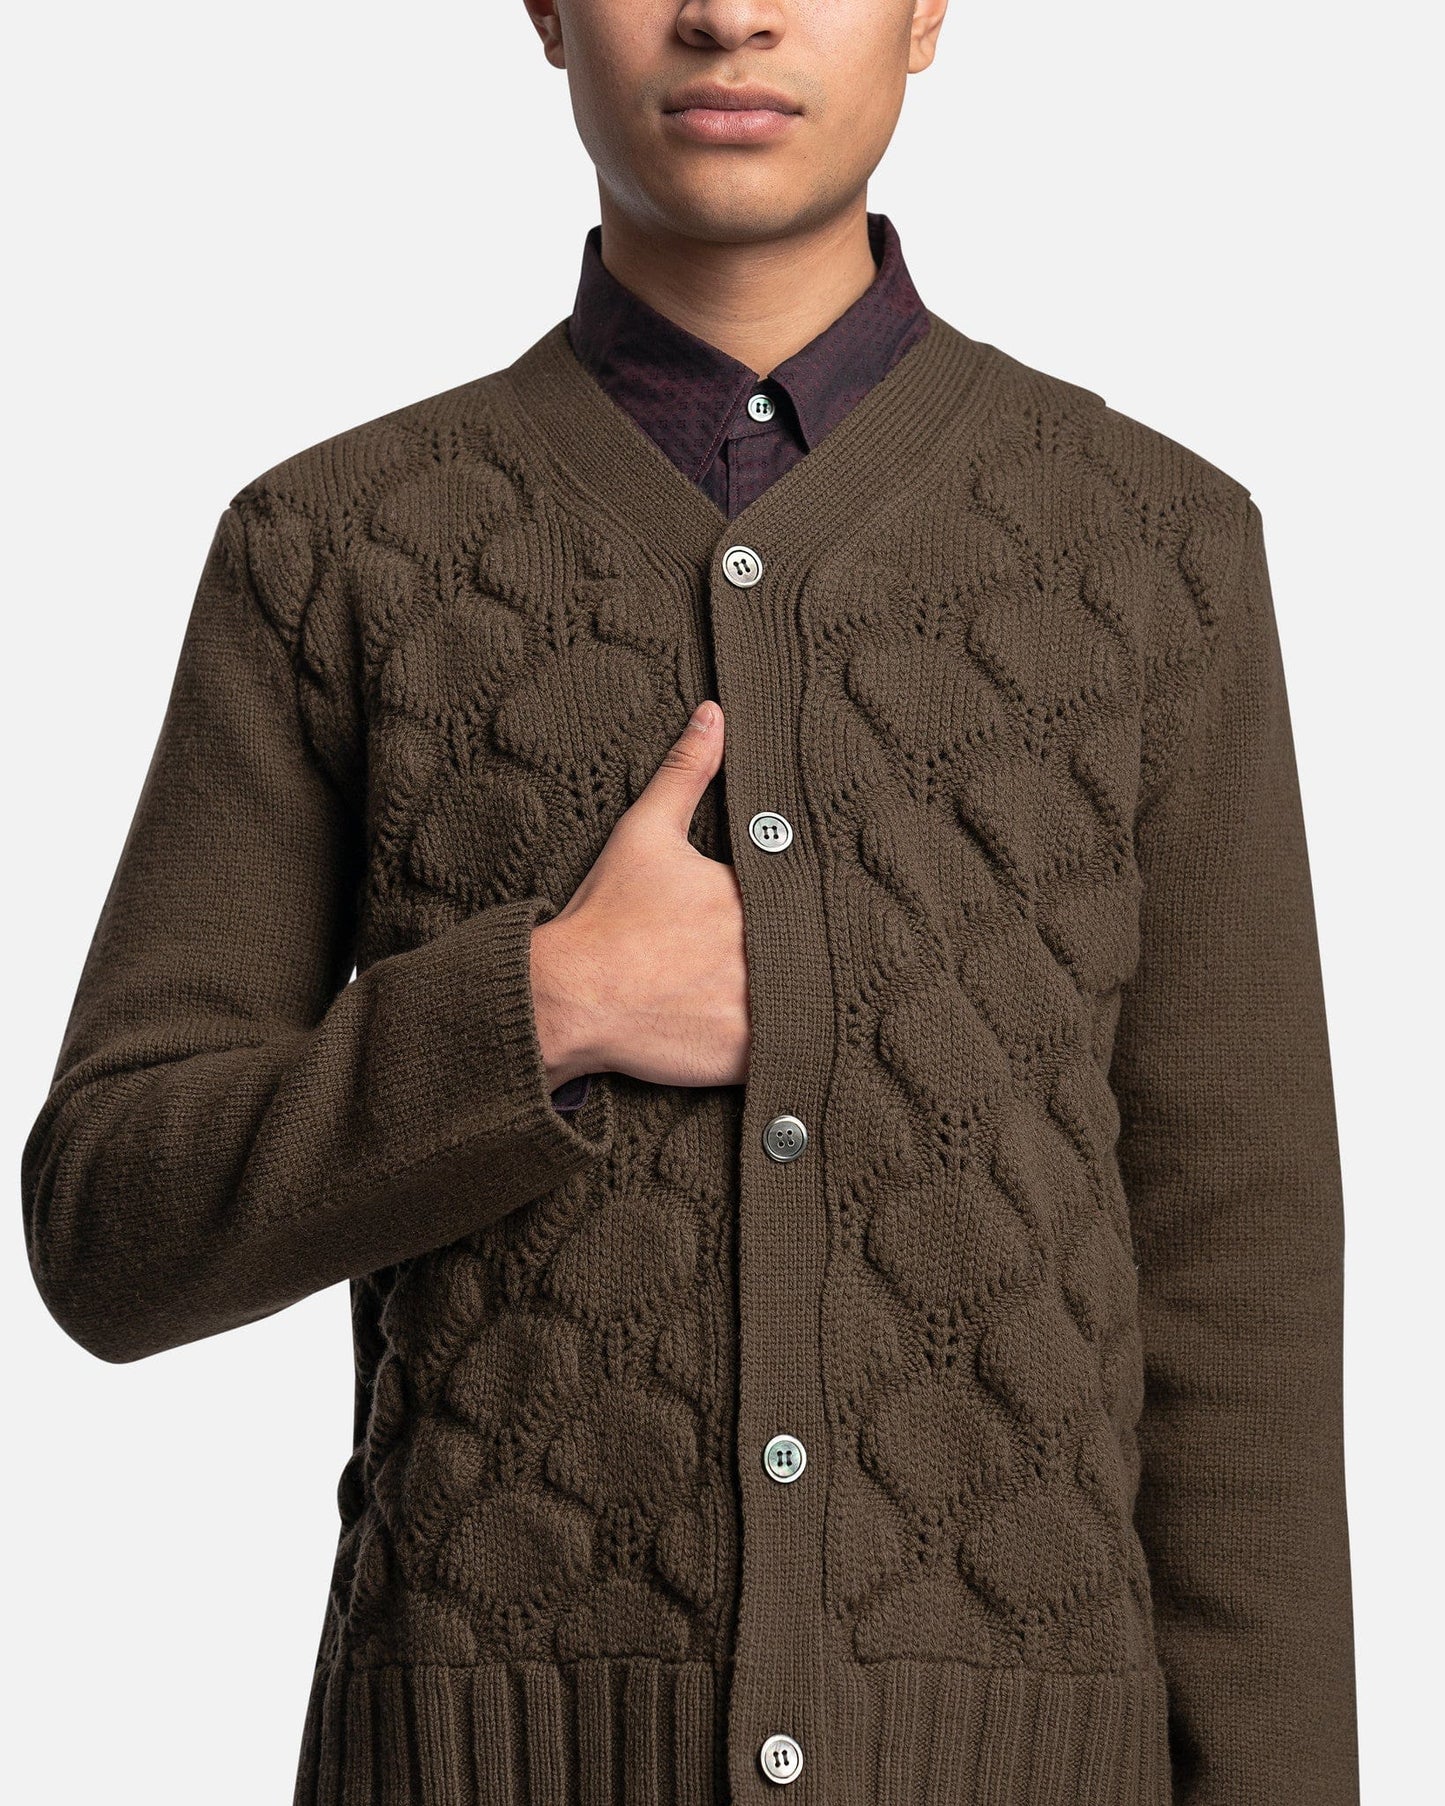 Comme des Garcons Homme Deux Men's Sweater Button Up Wool Cardigan in Khaki